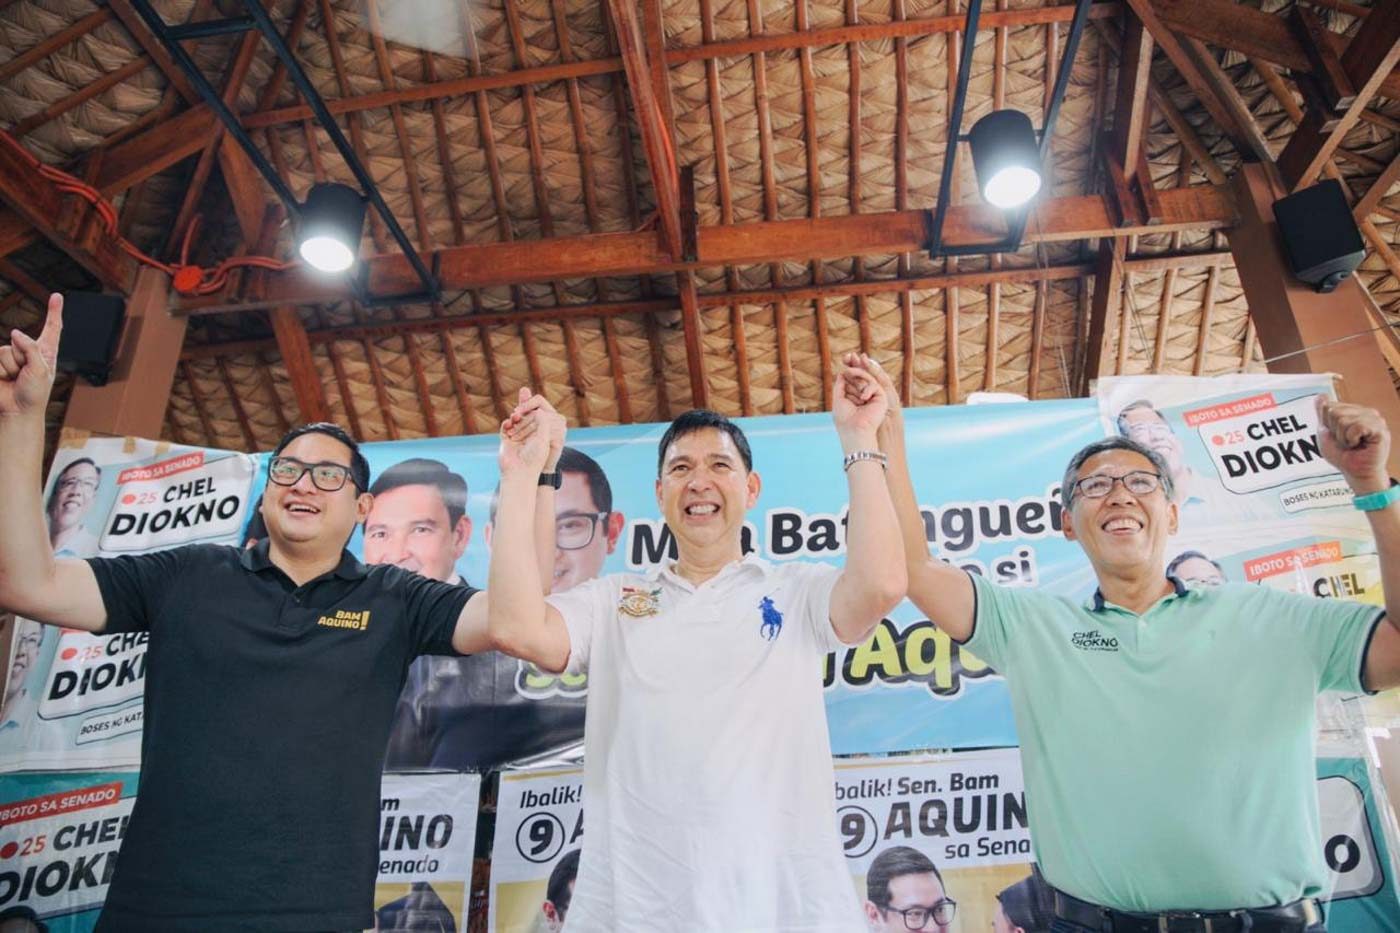 Recto endorses Aquino and Diokno for the Senate